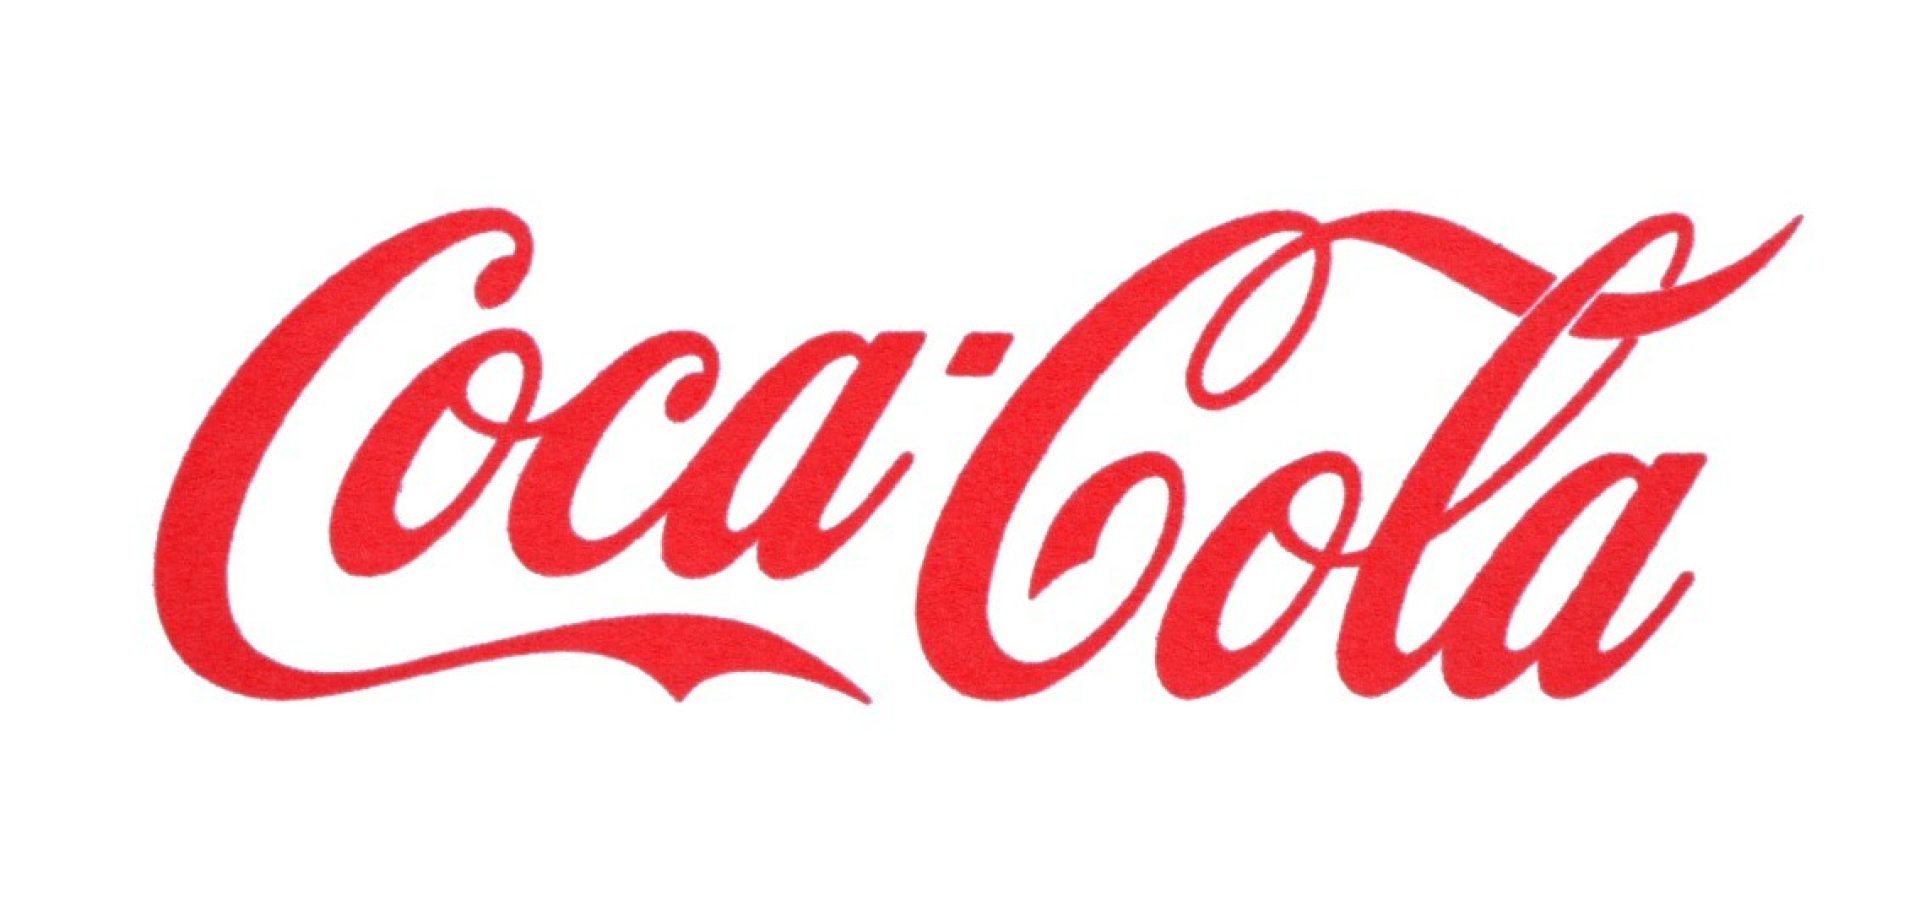 Coca-Cola and quarterly revenues